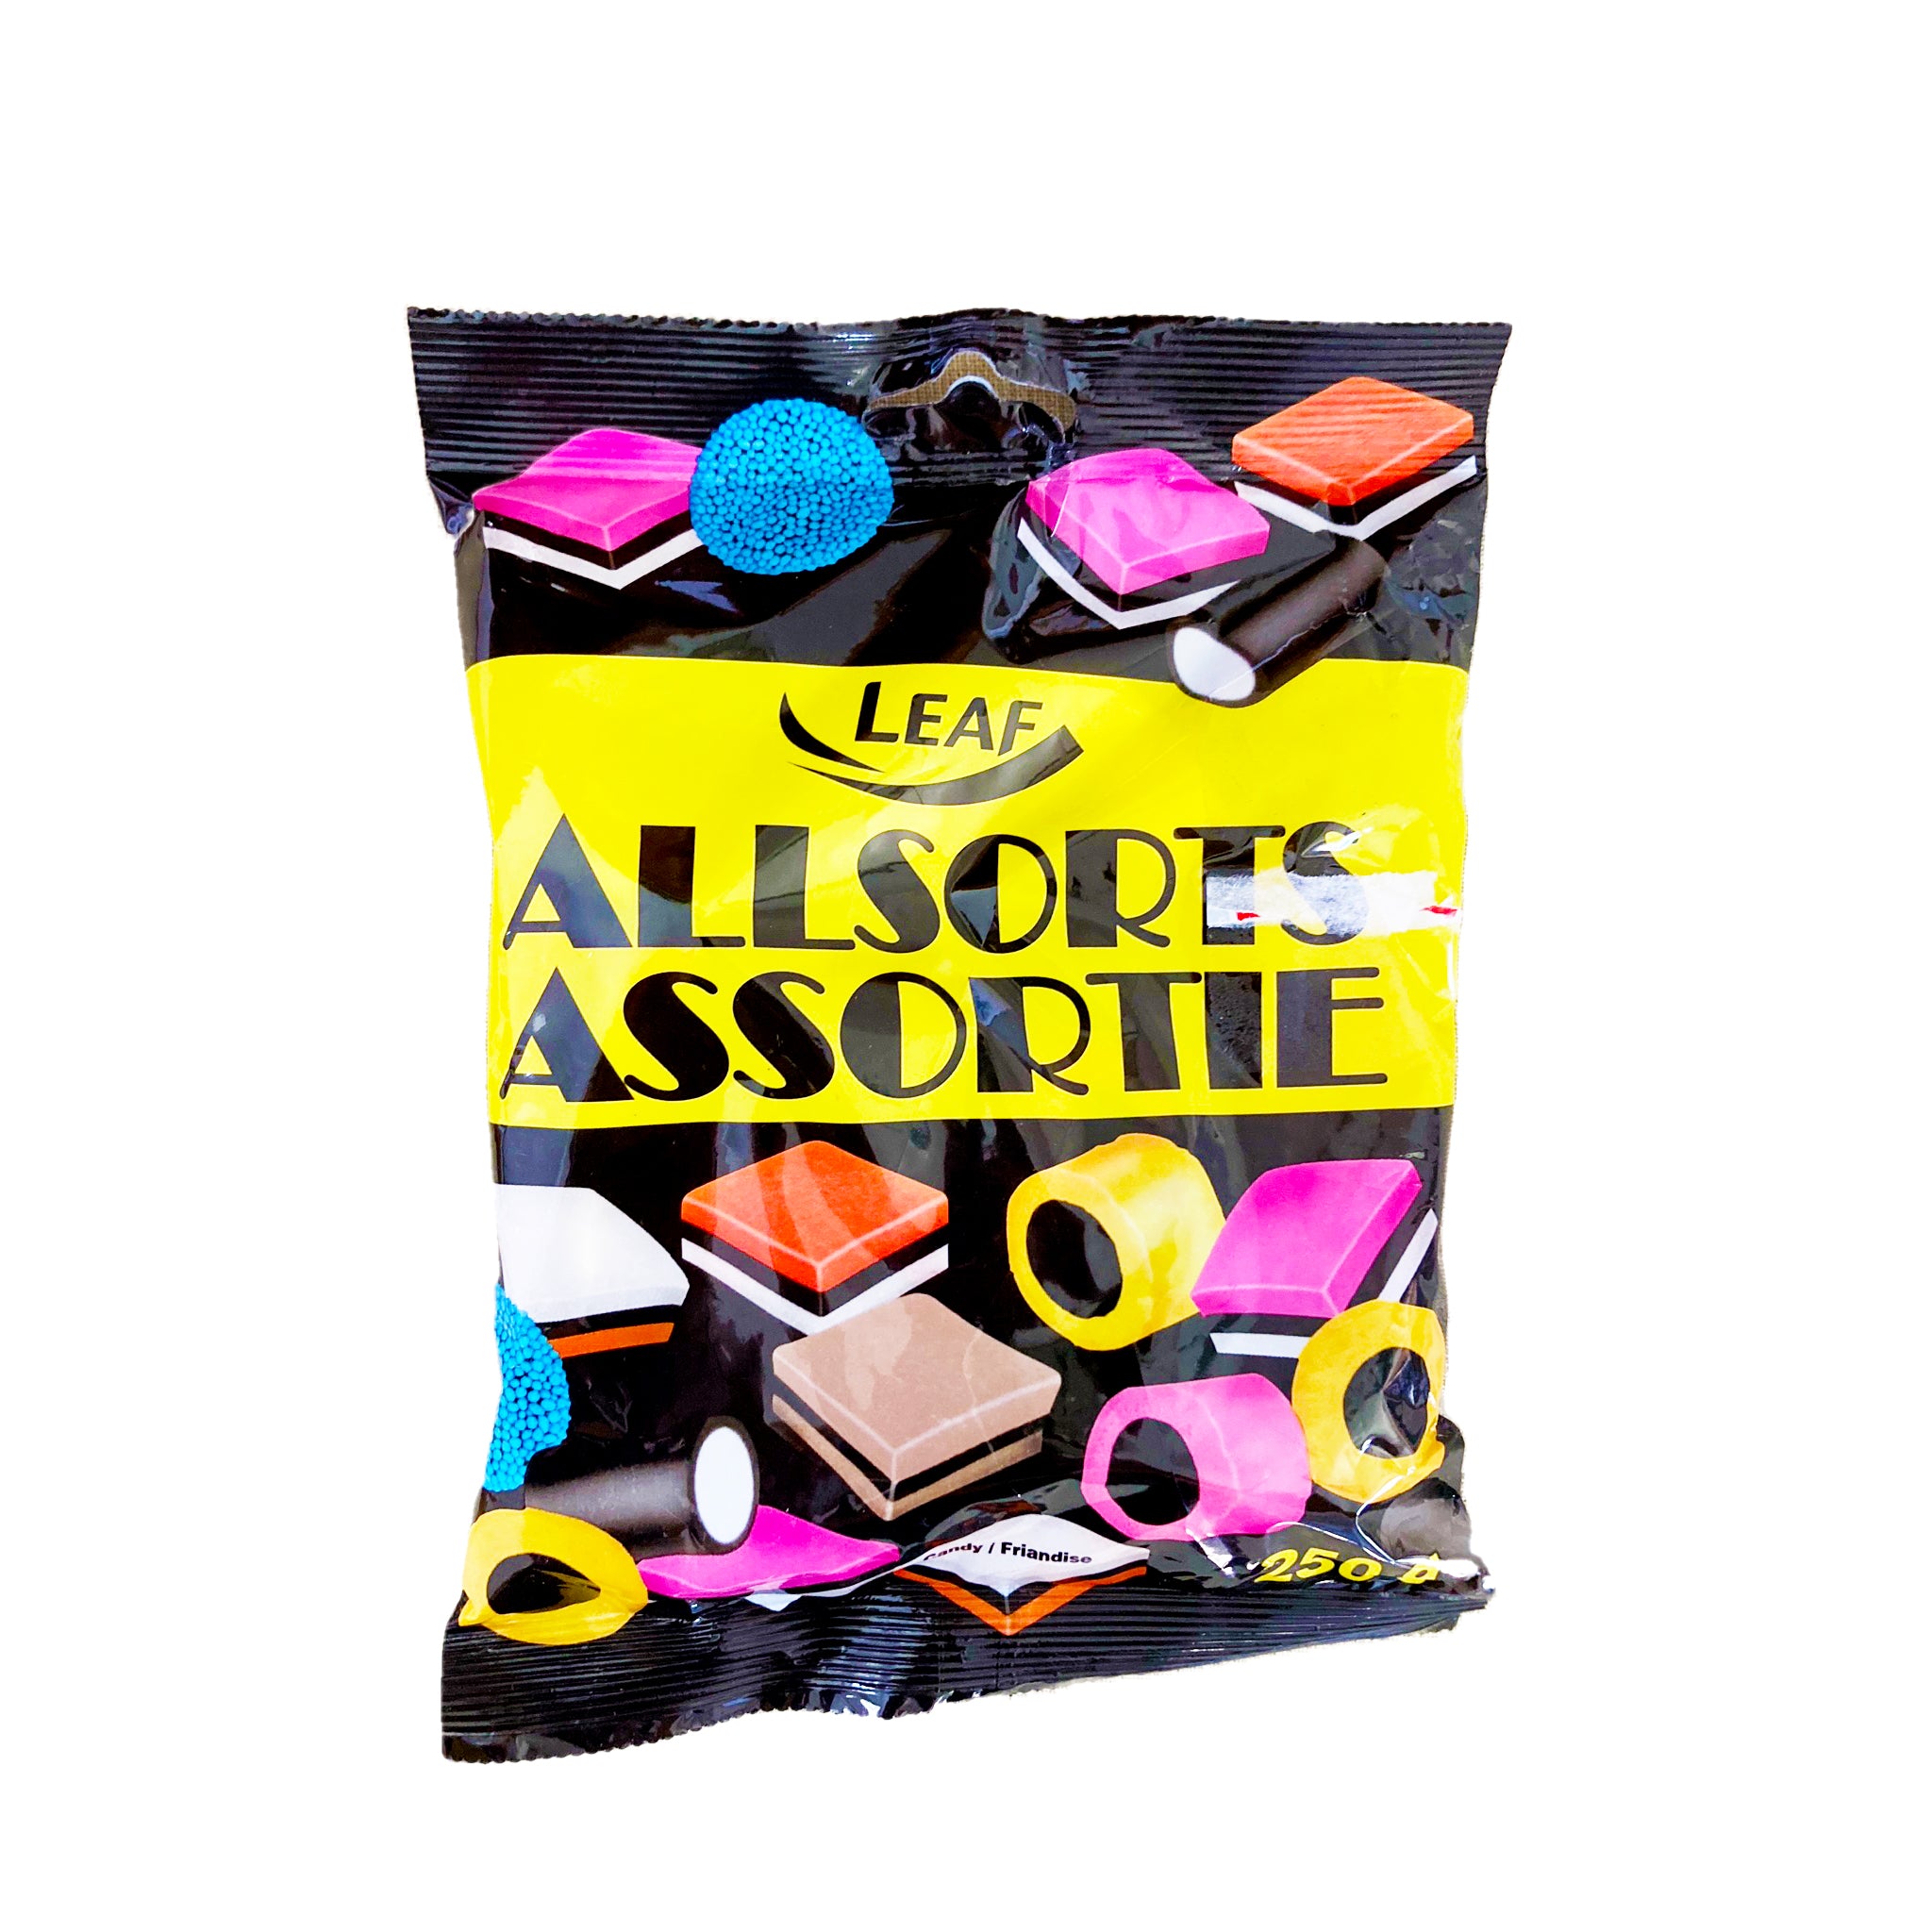 Assortie - Licorice Candy - סוכריות ליקריץ אסורטי